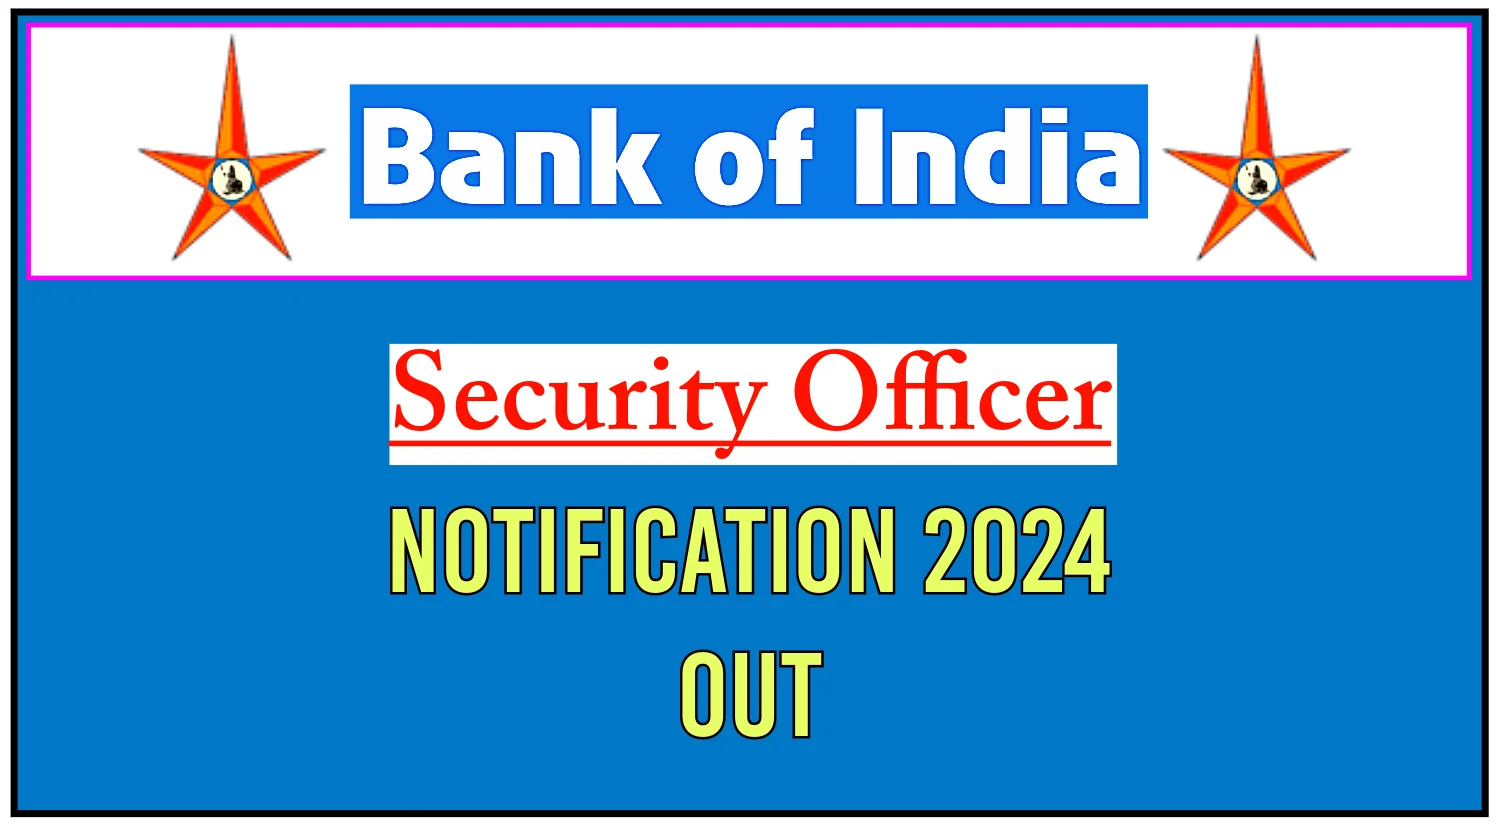 2024ல் Bank of India வேலைவாய்ப்பு: Security Officer காலி பணியிடங்கள் நிரப்பப்படவுள்ளன - டிகிரி முடித்தவர்கள் விண்ணப்பிக்கலாம் | ரூ.69,810 வரை சம்பளம்